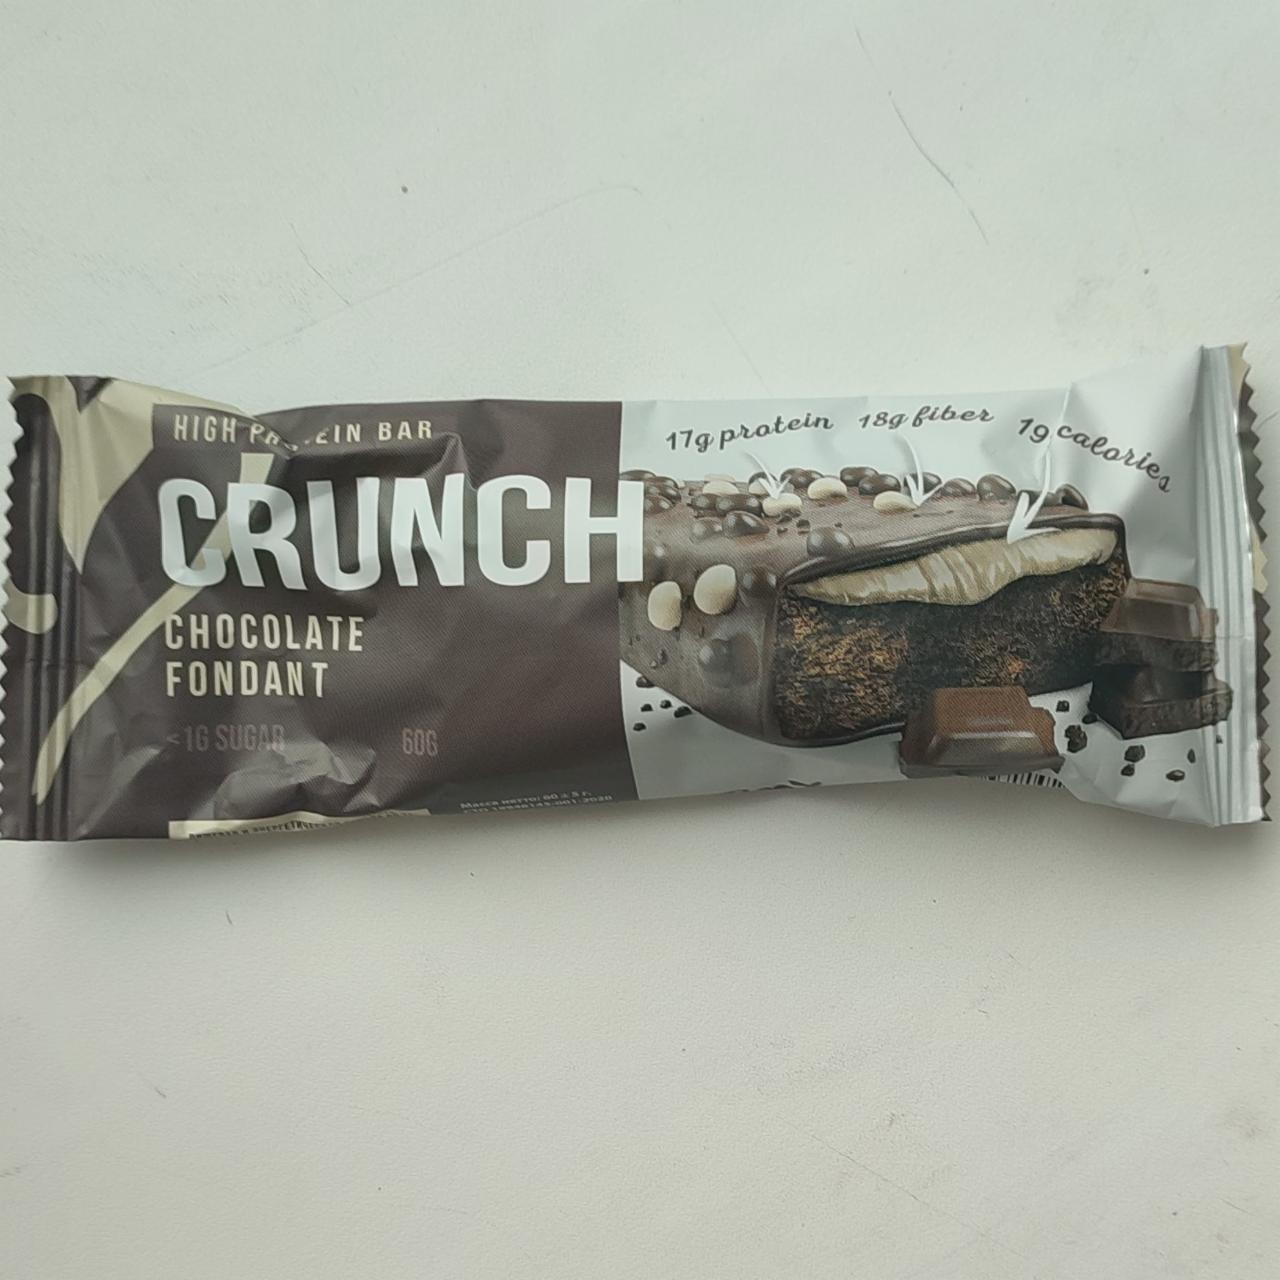 Фото - протеиновый батончик хрустящий шоколадный фондан CRUNCH chocolate fondant High protein